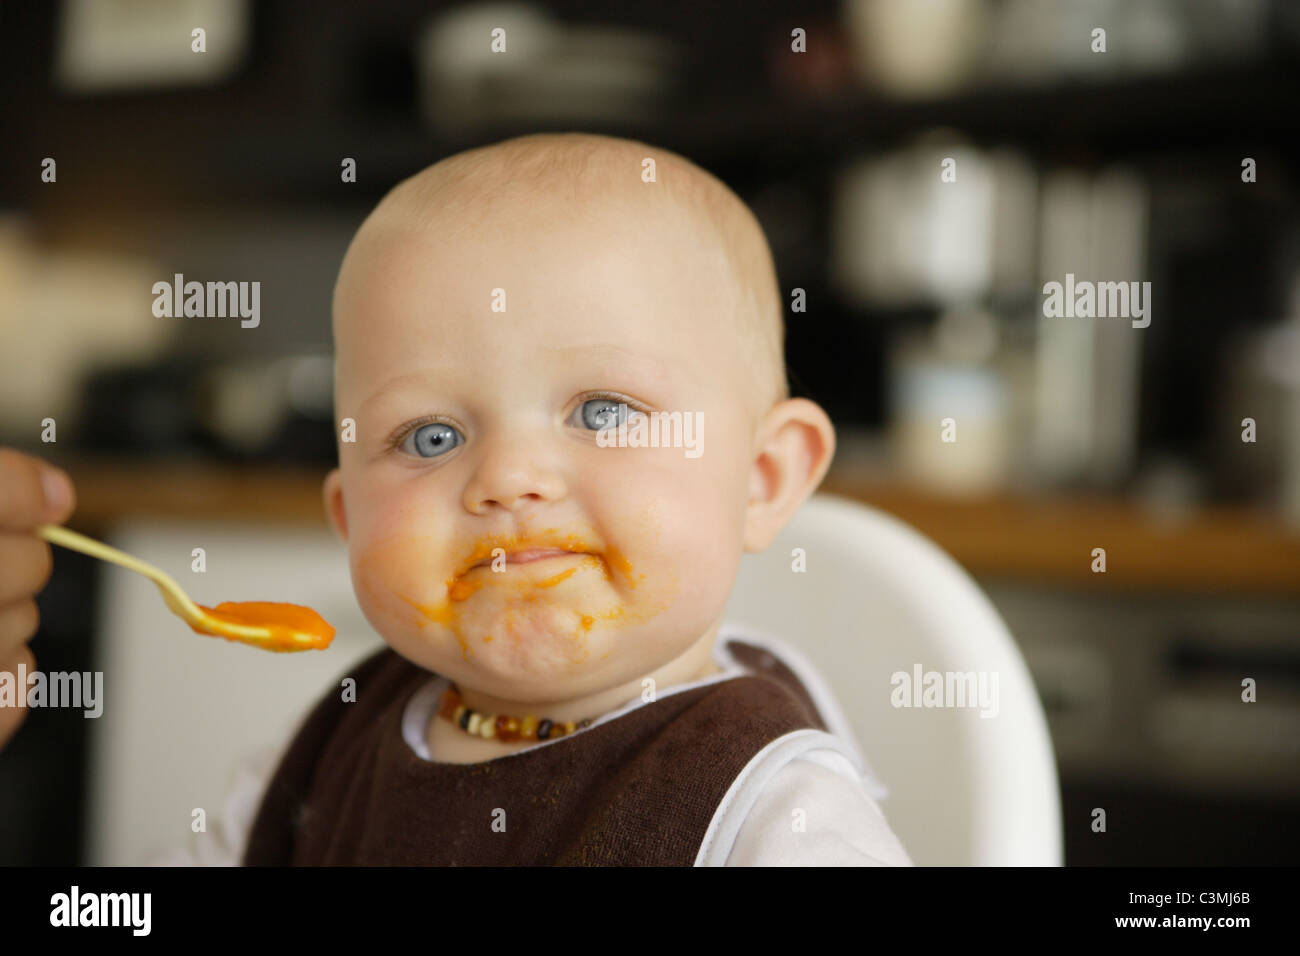 Alemania, madre alimentando la comida del bebé a su hija Foto de stock